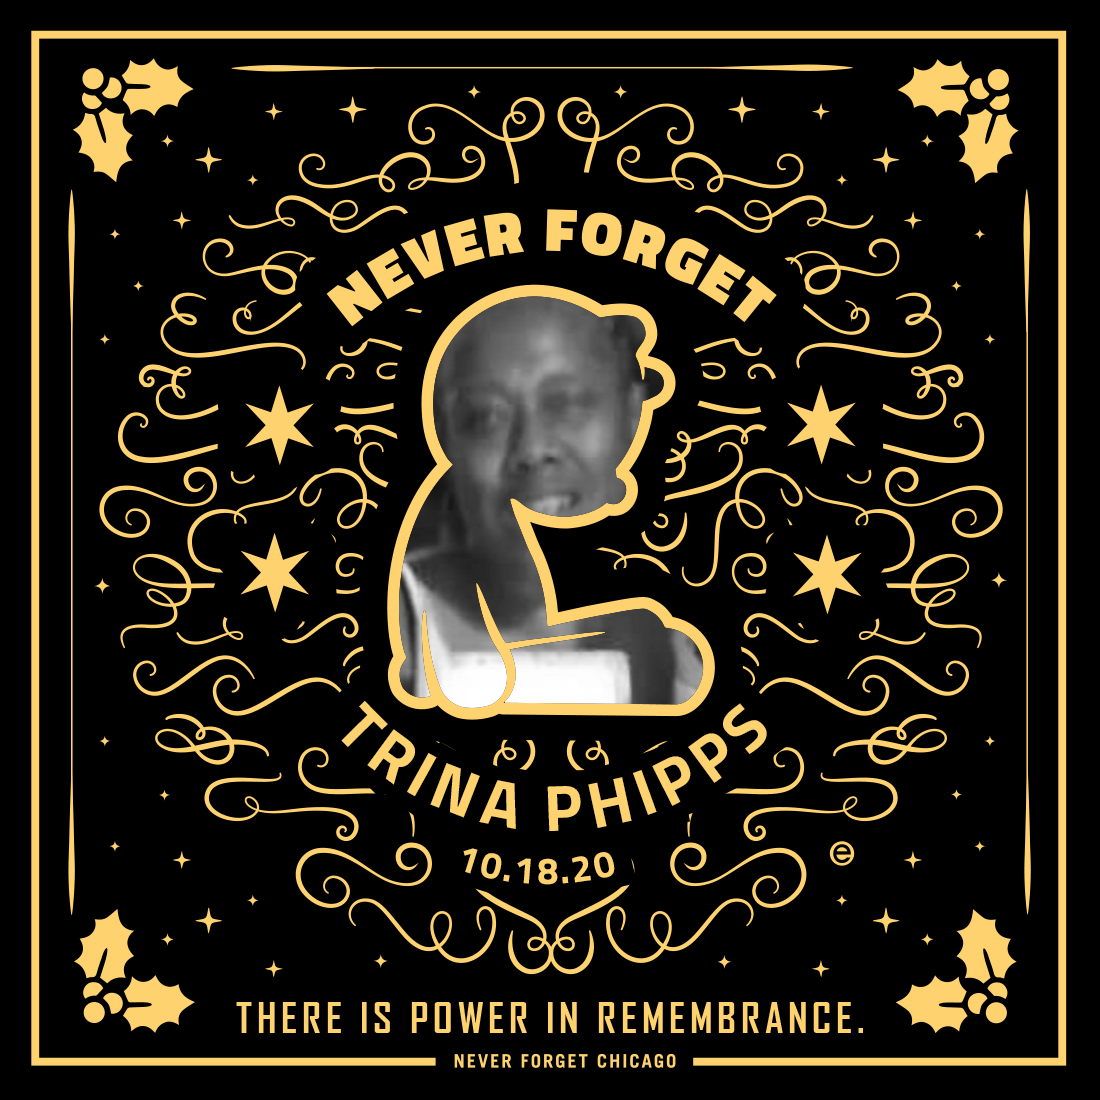 Trina Phipps